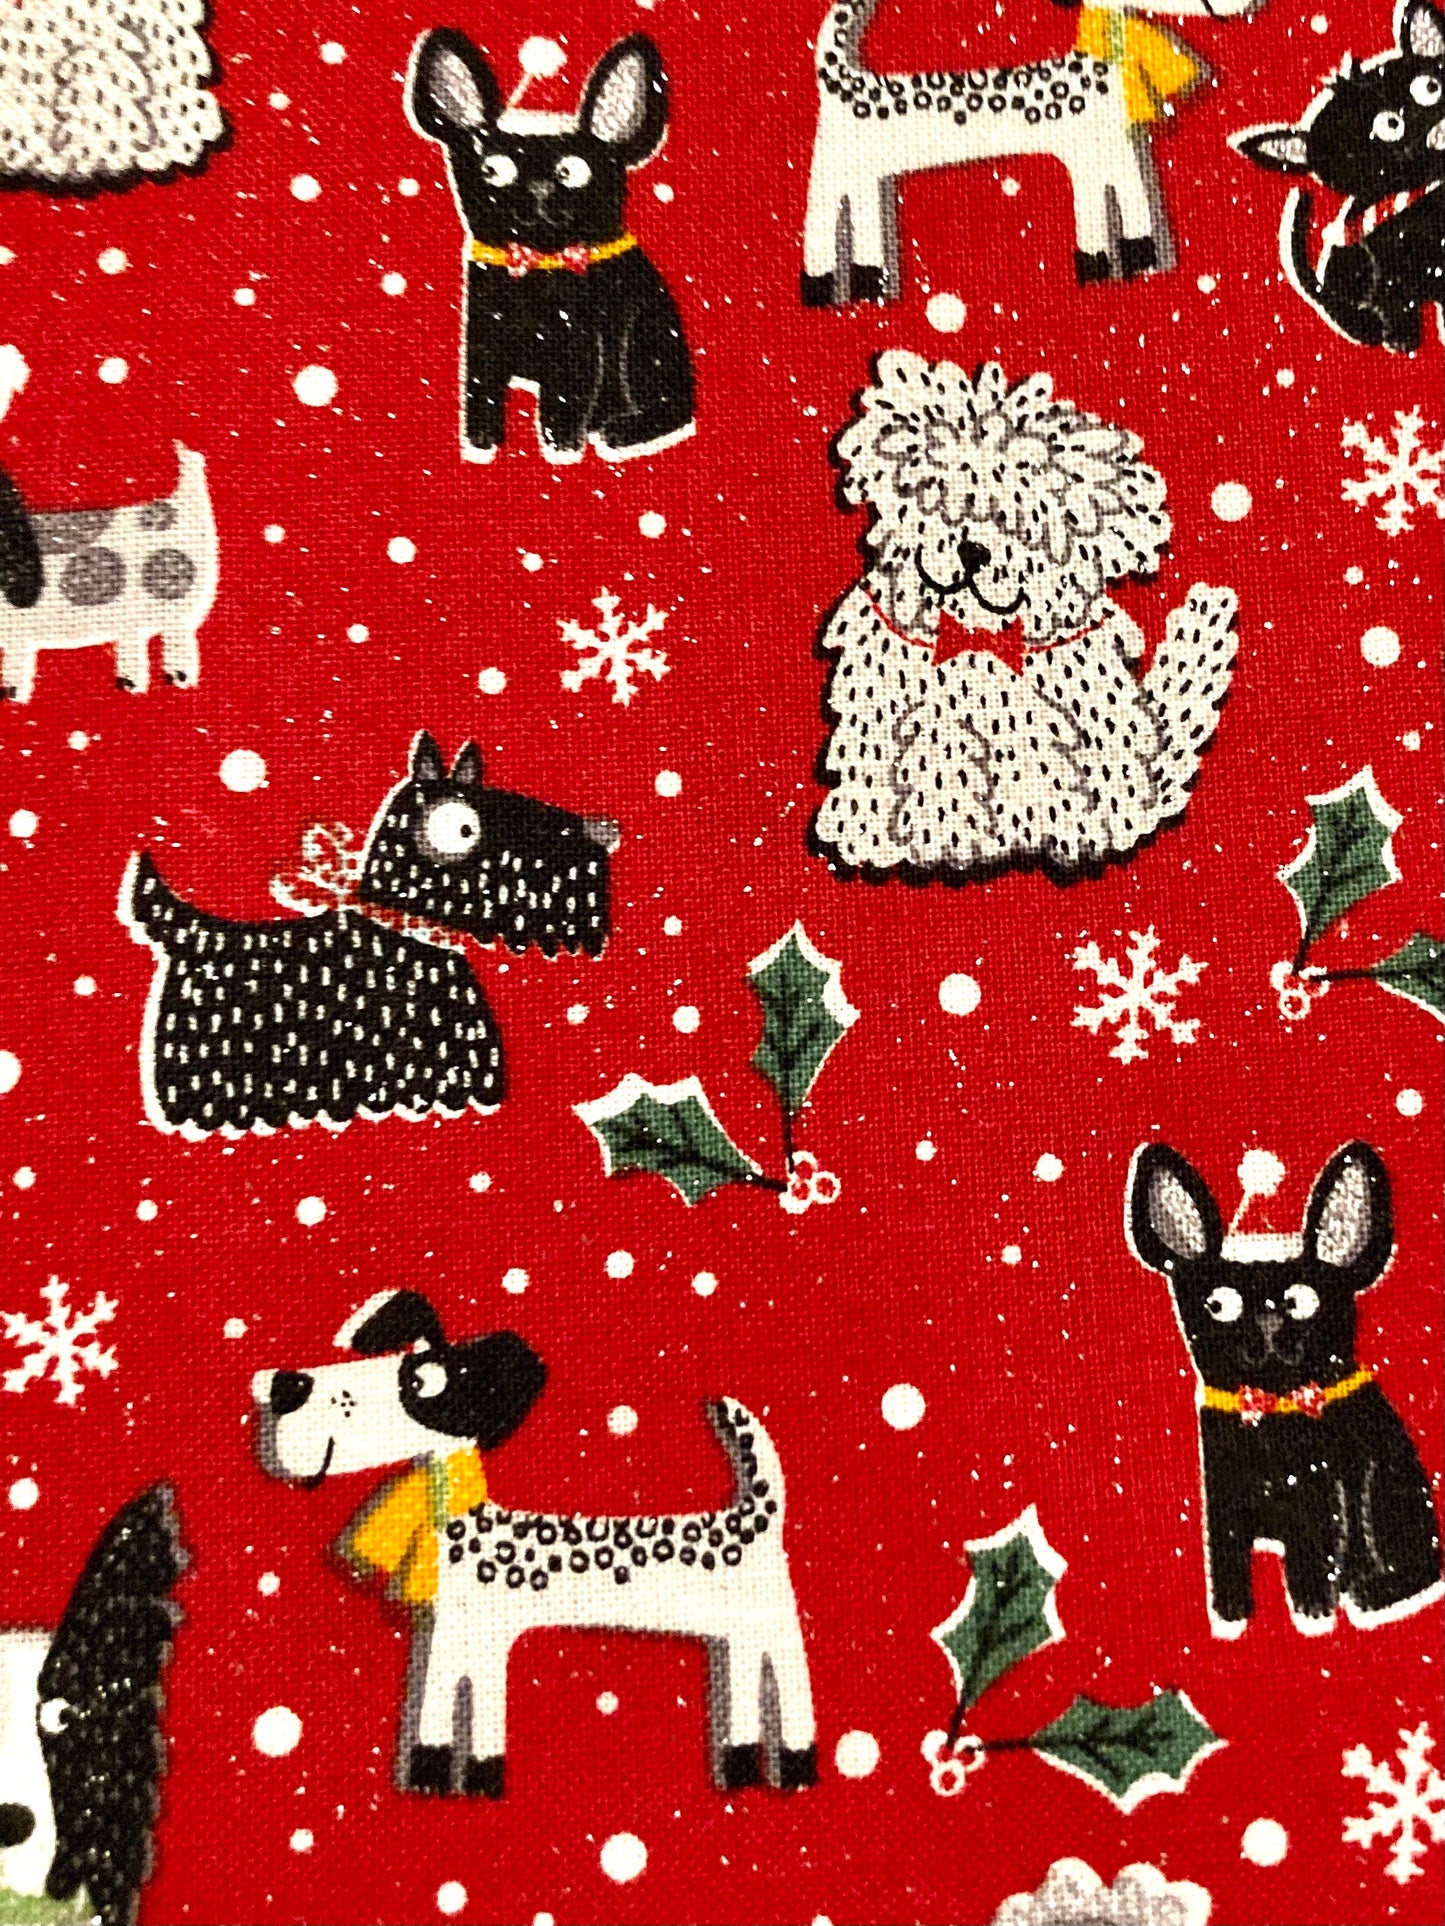 Cutest Dog Lover Christmas reversible blanket!